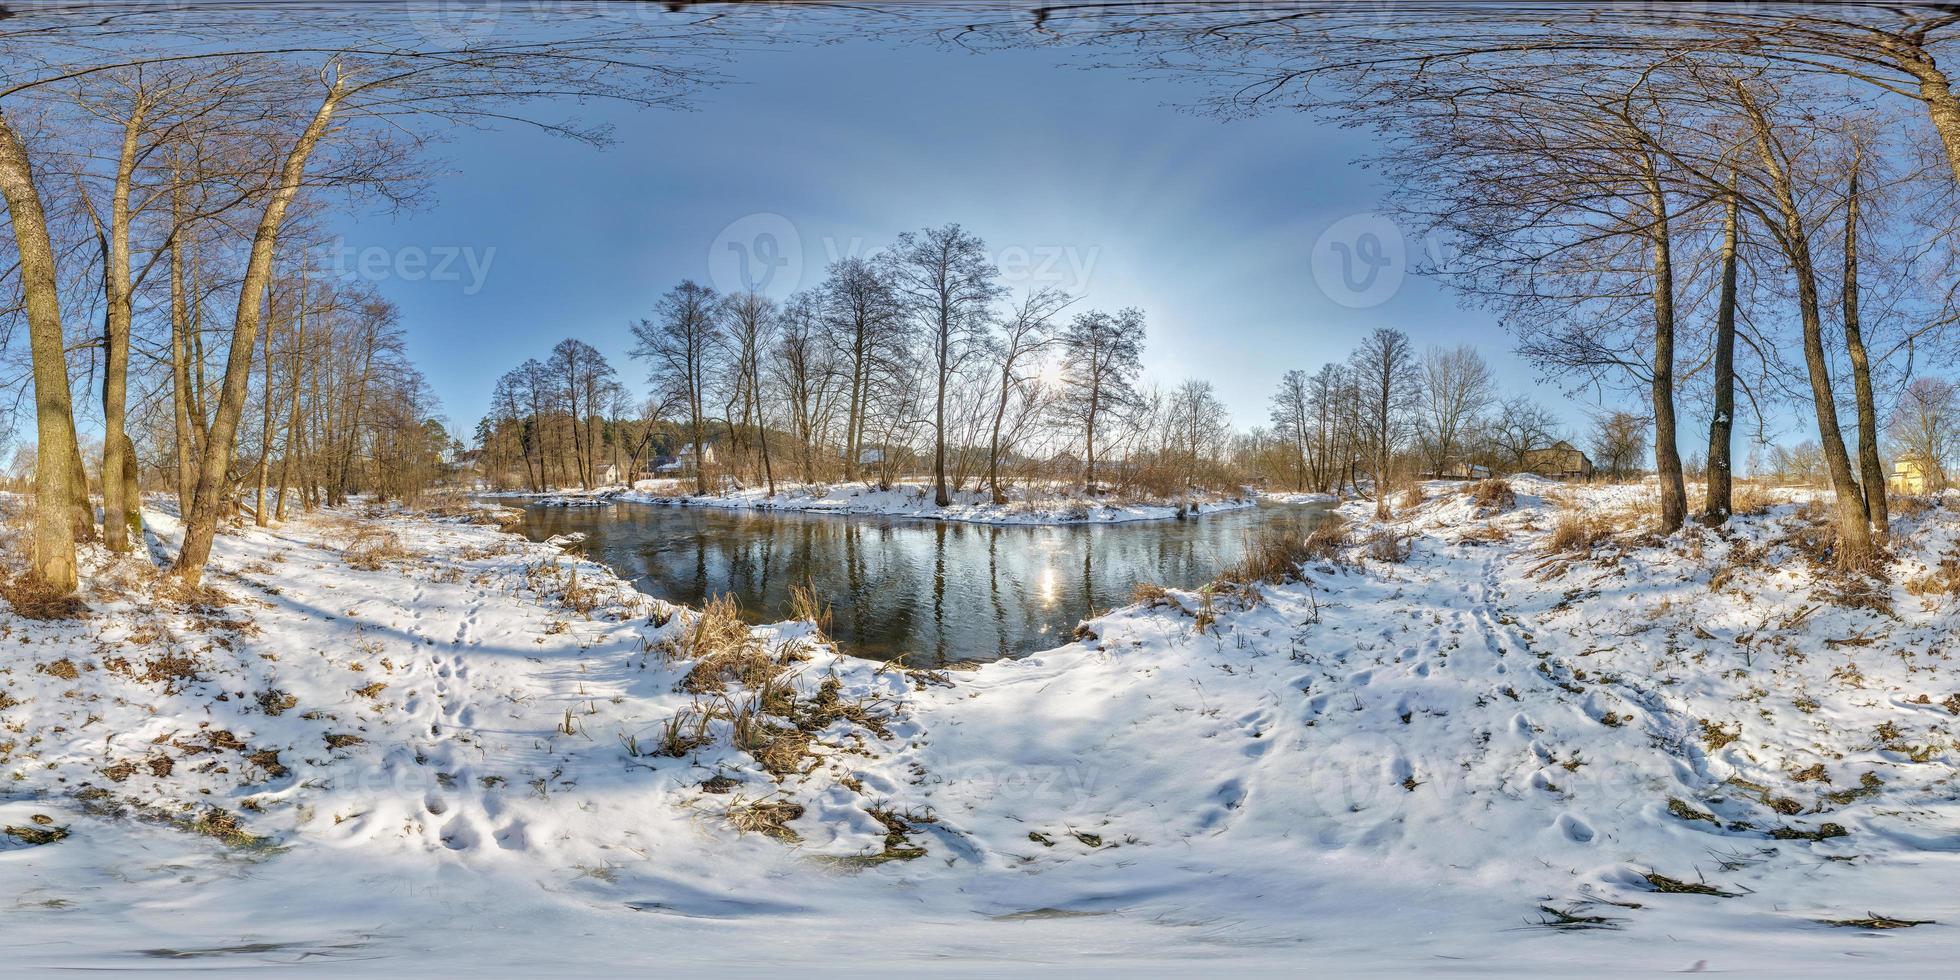 Panorama esférico completo sin costuras Vista en ángulo de 360 grados cerca del río estrecho y rápido en una tarde soleada de invierno. Panorámica 360 en proyección equirrectangular. vr ar contenido de realidad virtual foto